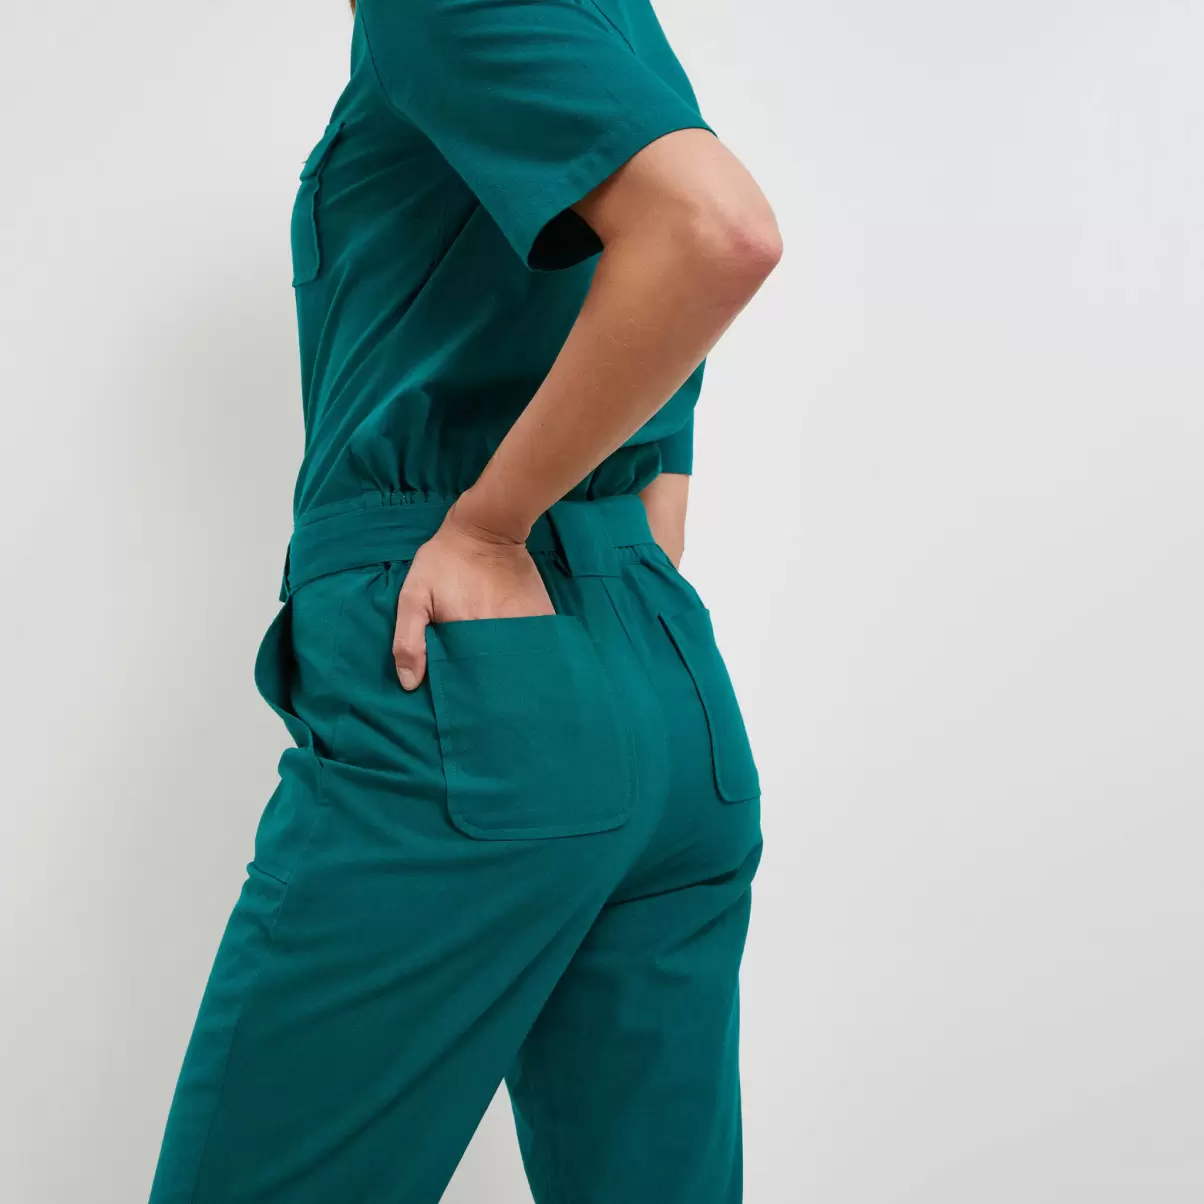 Robes Vert Femme Grain De Malic Combinaison Pantalon Zippée Femme Réduction De Prix - 3